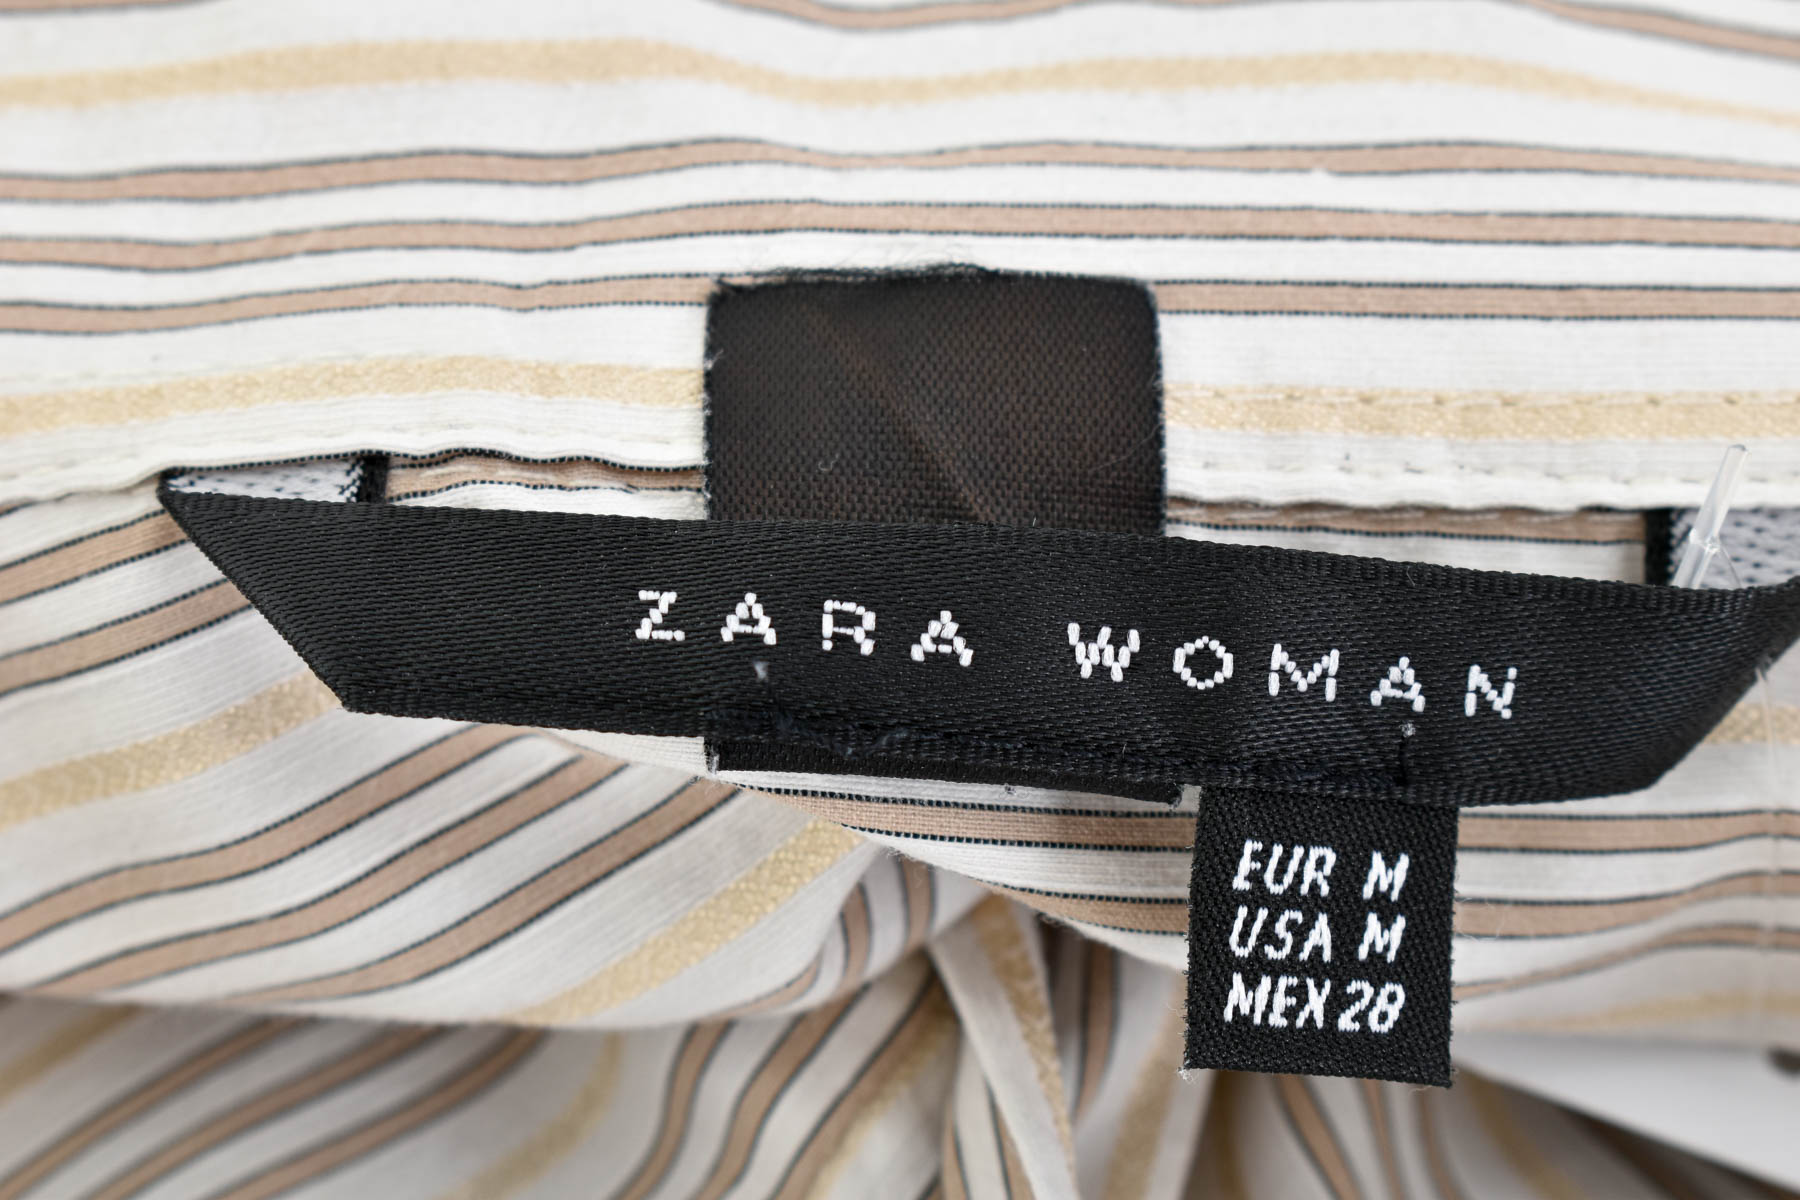 Γυναικείо πουκάμισο - ZARA Woman - 2